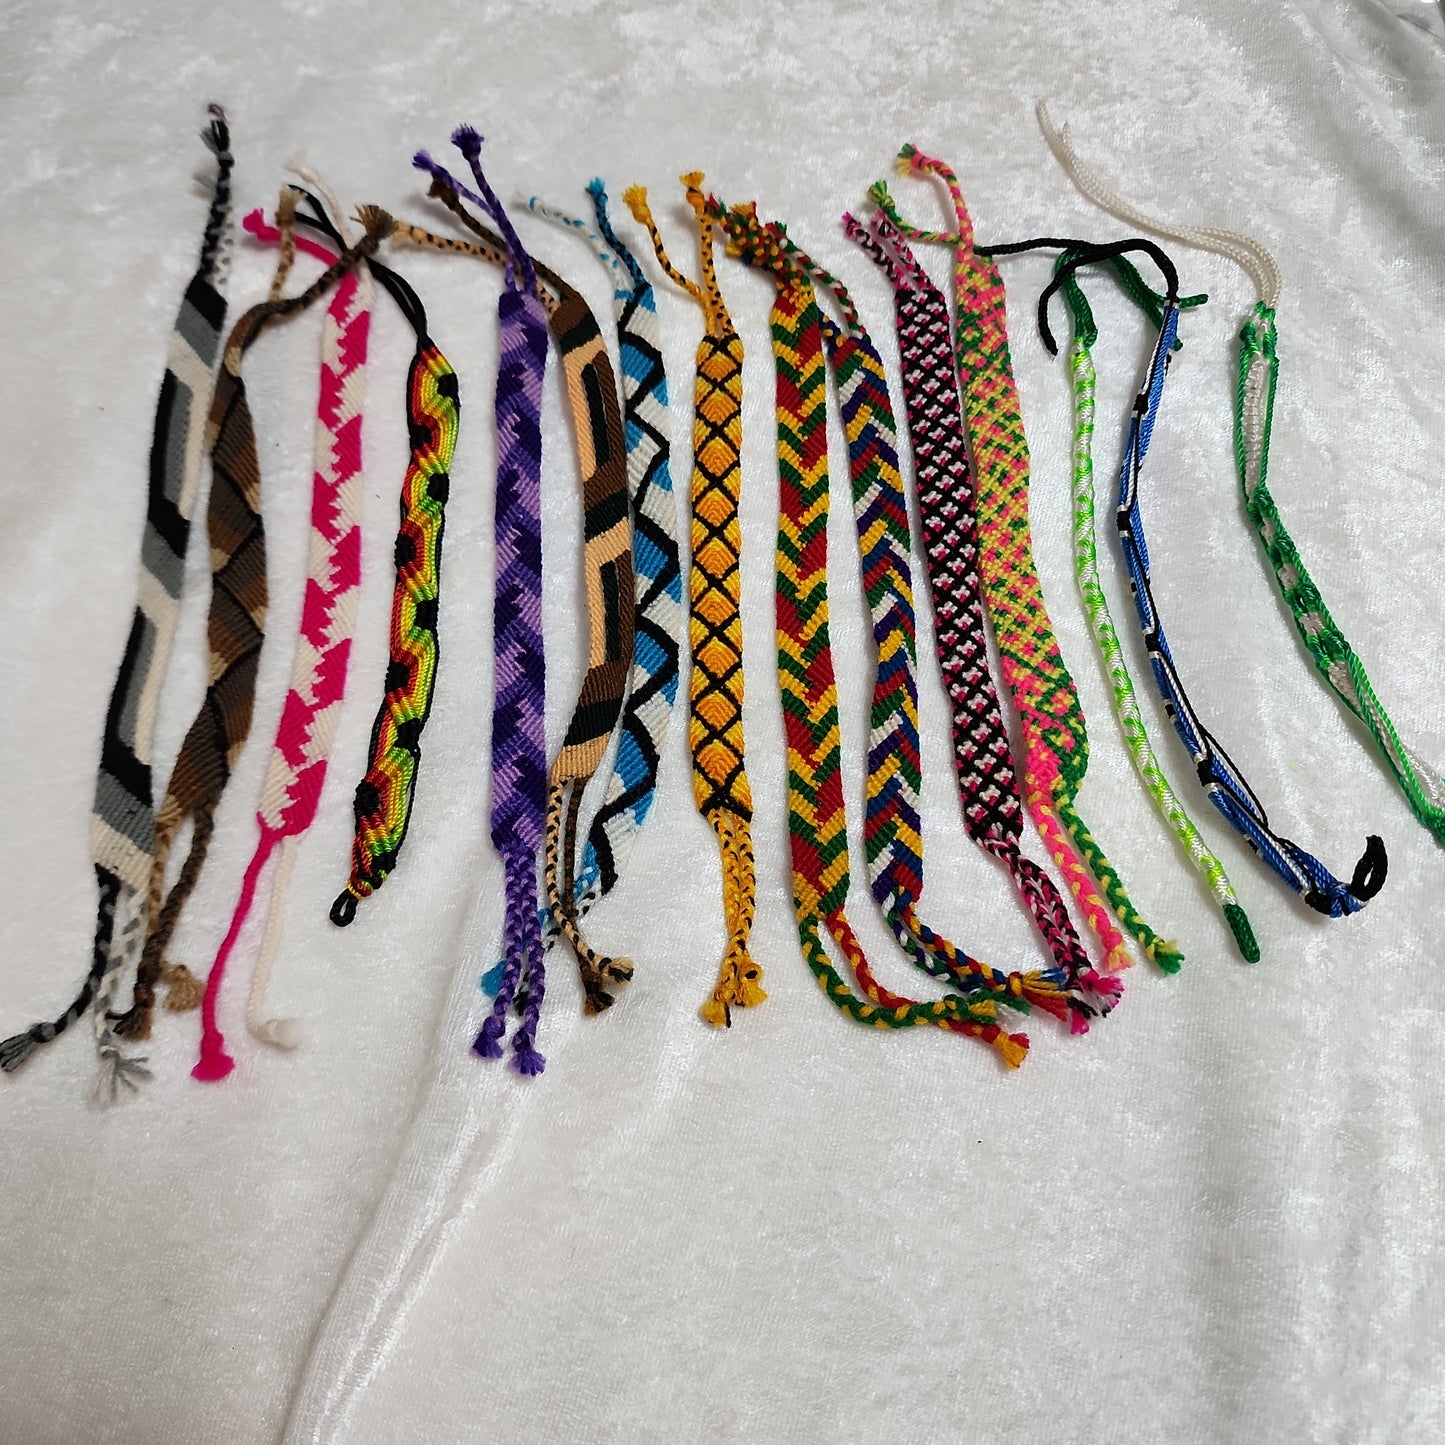 Tribal inspired friendship Bracelets